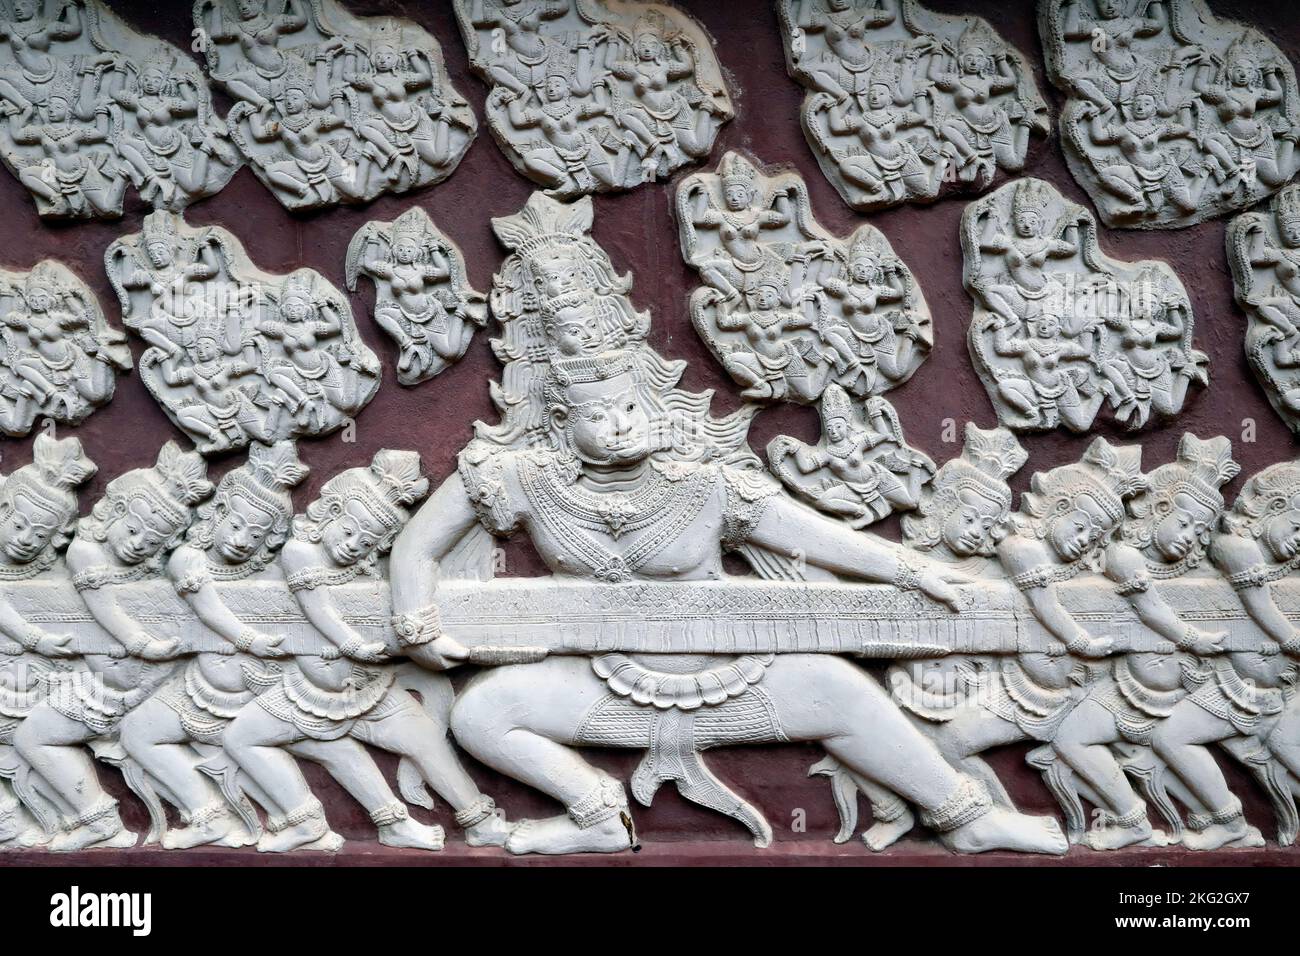 Monastero di Wat Ounalom. La Samudra Manthana ( zangolatura dell'oceano ) spiega l'origine dell'elisir della vita eterna, amrita. Phnom Penh. Cambo Foto Stock